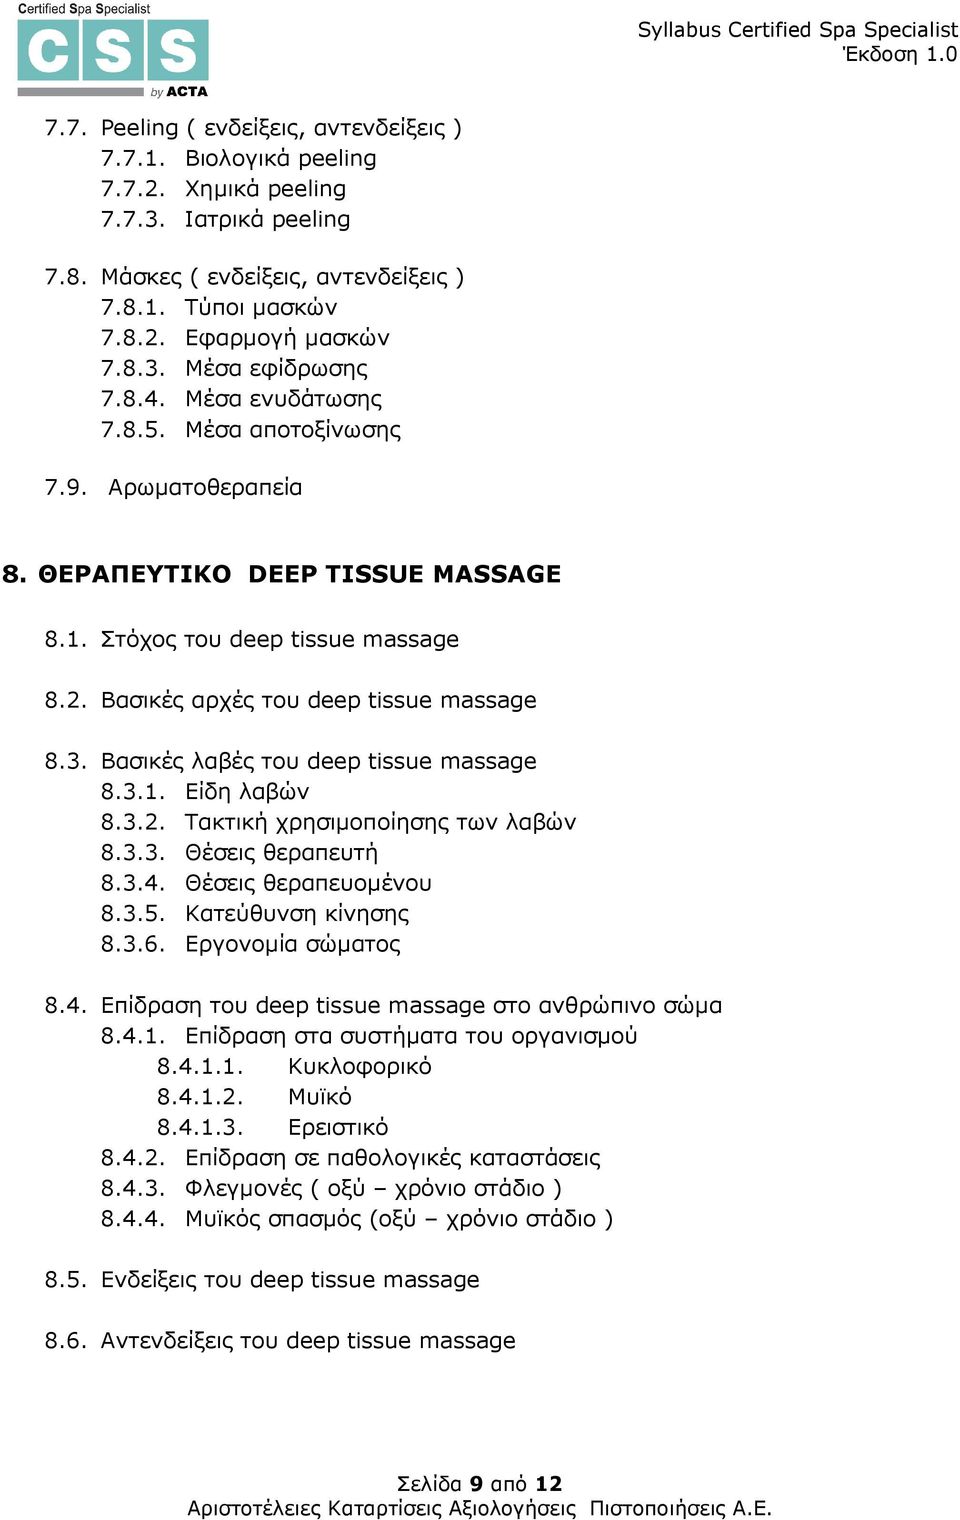 Βασικές λαβές του deep tissue massage 8.3.1. Είδη λαβών 8.3.2. Τακτική χρησιµοποίησης των λαβών 8.3.3. Θέσεις θεραπευτή 8.3.4. Θέσεις θεραπευοµένου 8.3.5. Κατεύθυνση κίνησης 8.3.6.